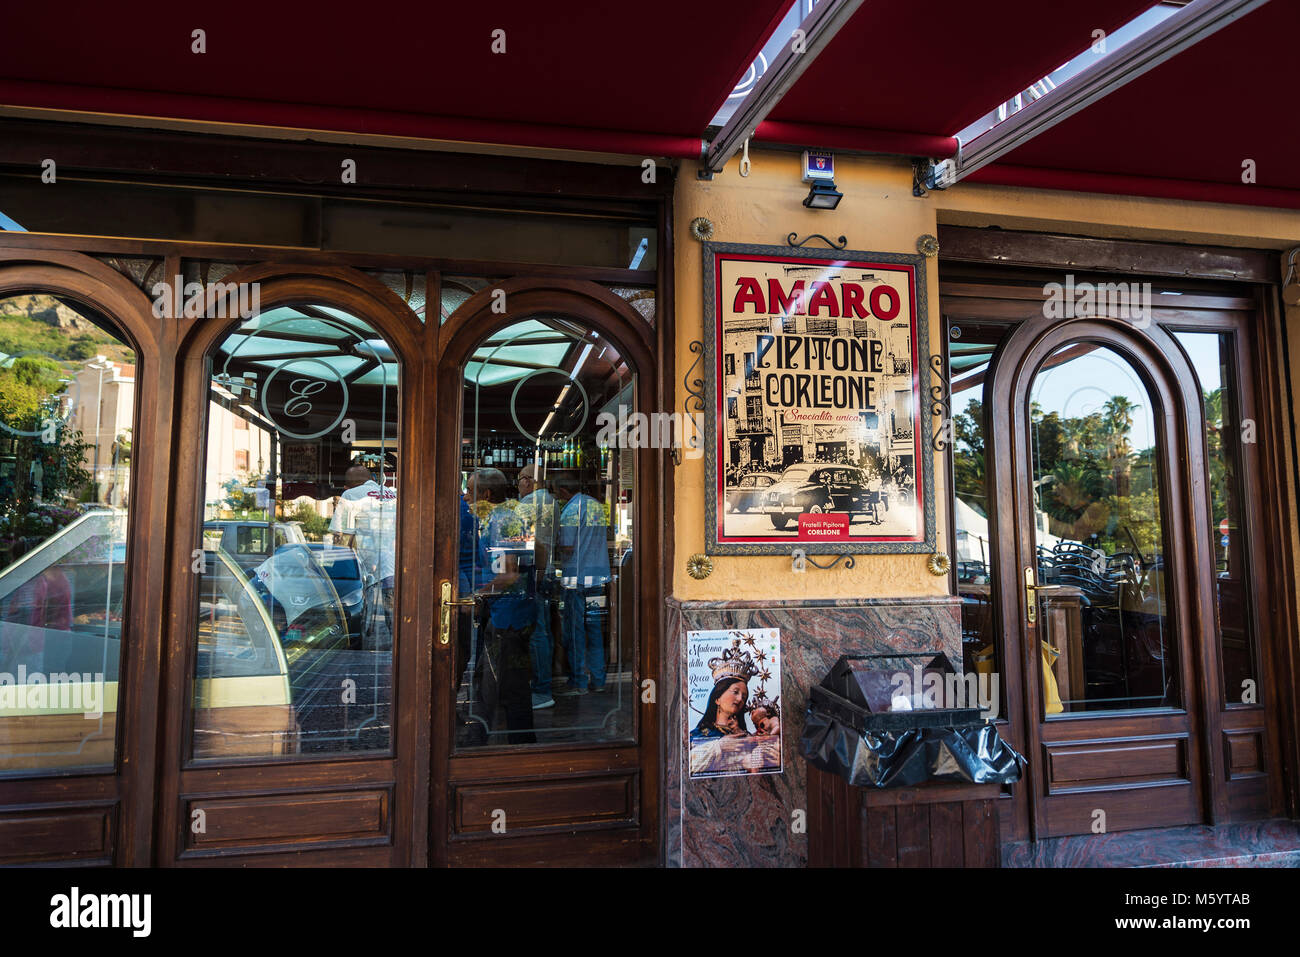 Corleone, Italie - 9 août 2017 : Entrée d'un bar avec des personnes à l'intérieur et un signe de la liqueur Amaro à Corleone, ville d'associer avec t Banque D'Images